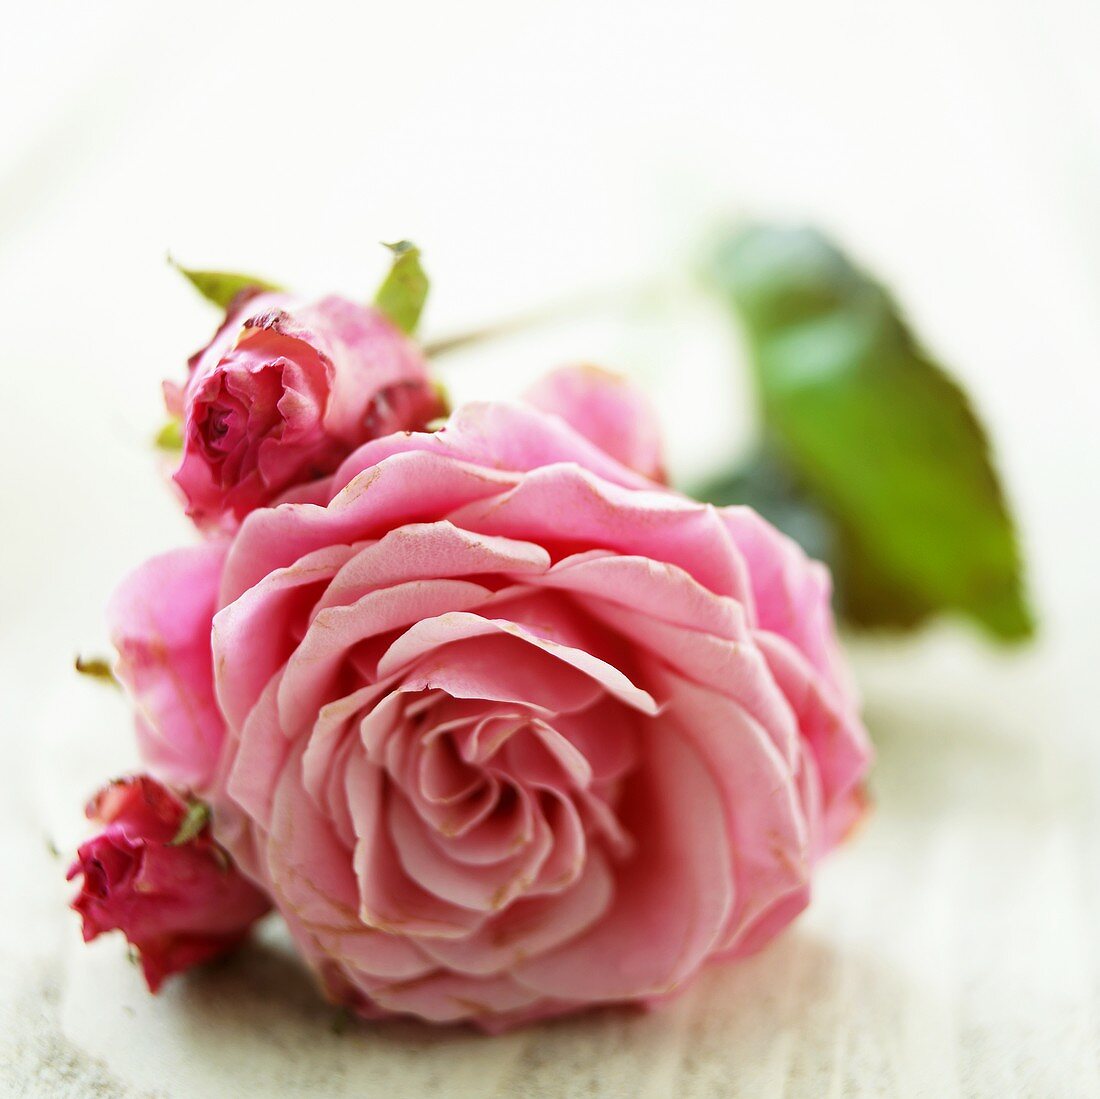 Pinkfarbene Rose mit Knospen